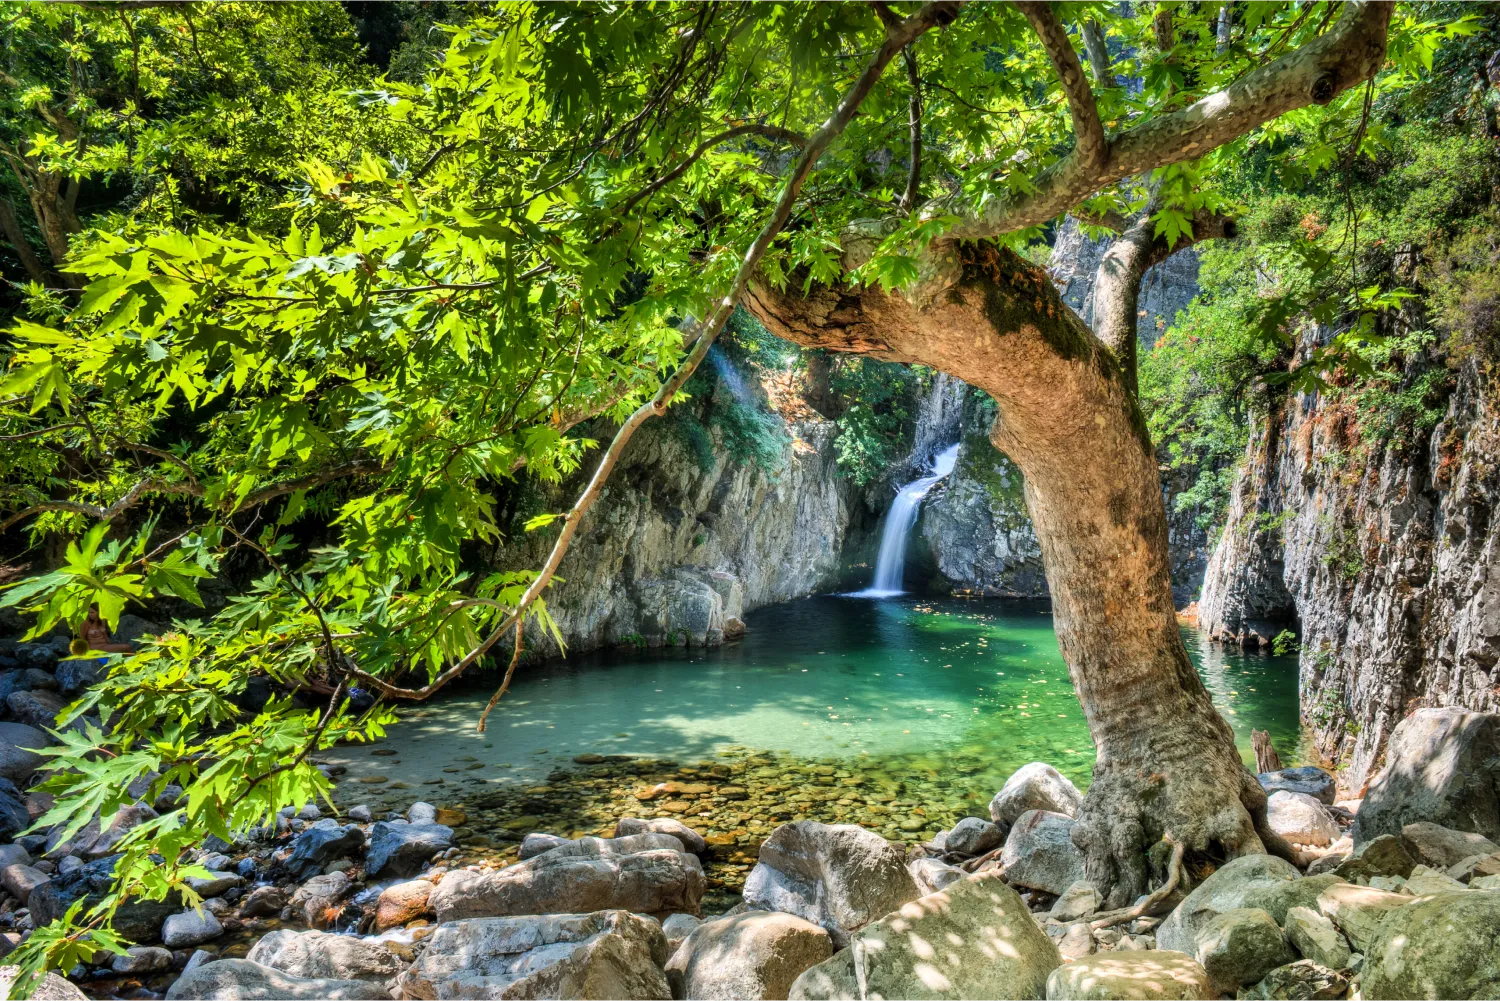 Mikres Vathres Waterfall in Samothraki